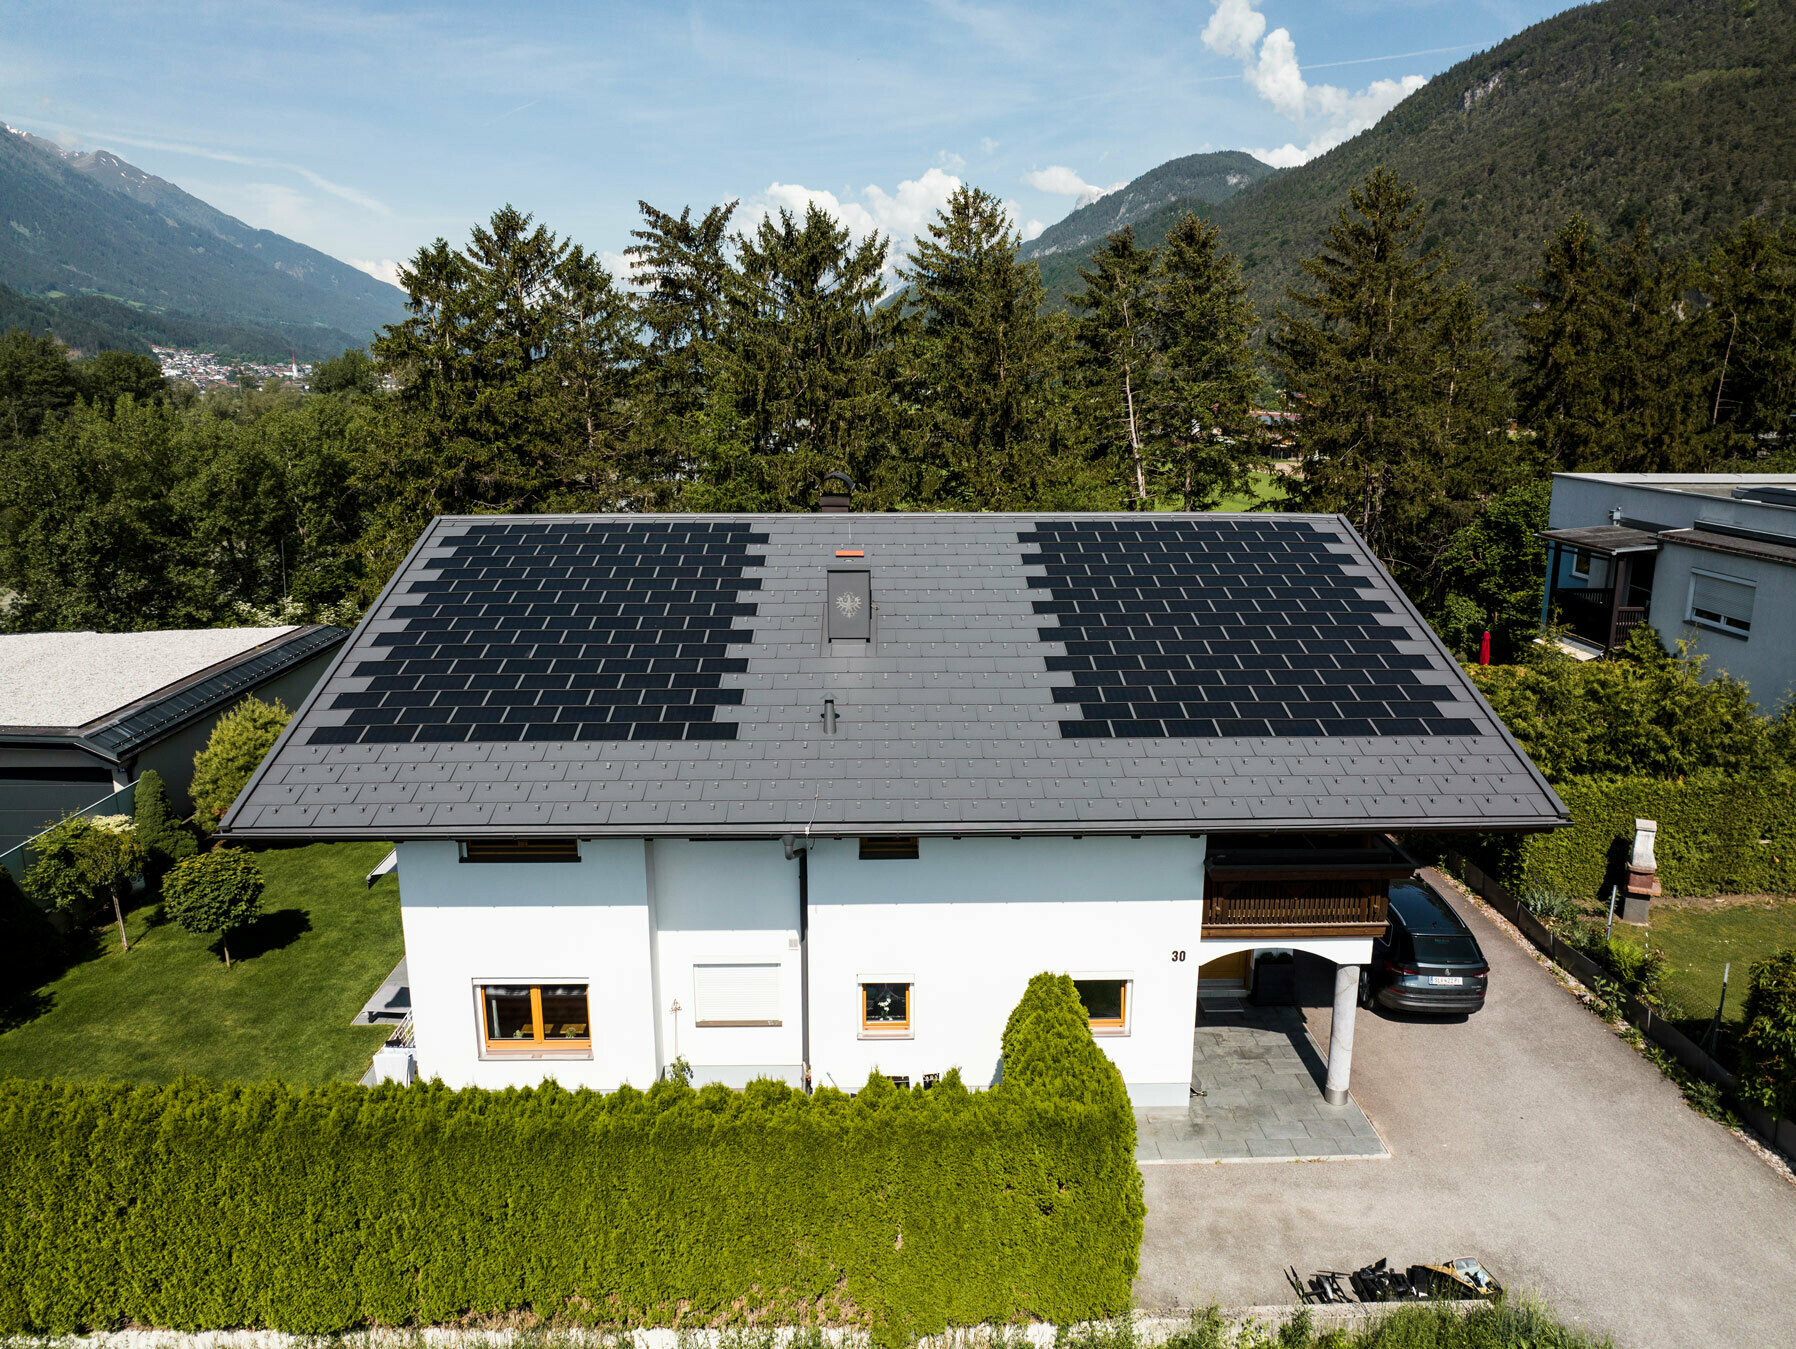 Zu sehen ist ein Einfamilienhaus eingedeckt mit der PREFA Solardachplatte klein mit Dachplatte R.16 in der Farbe P.10 Dunkelgrau in ländlicher Umgebung.